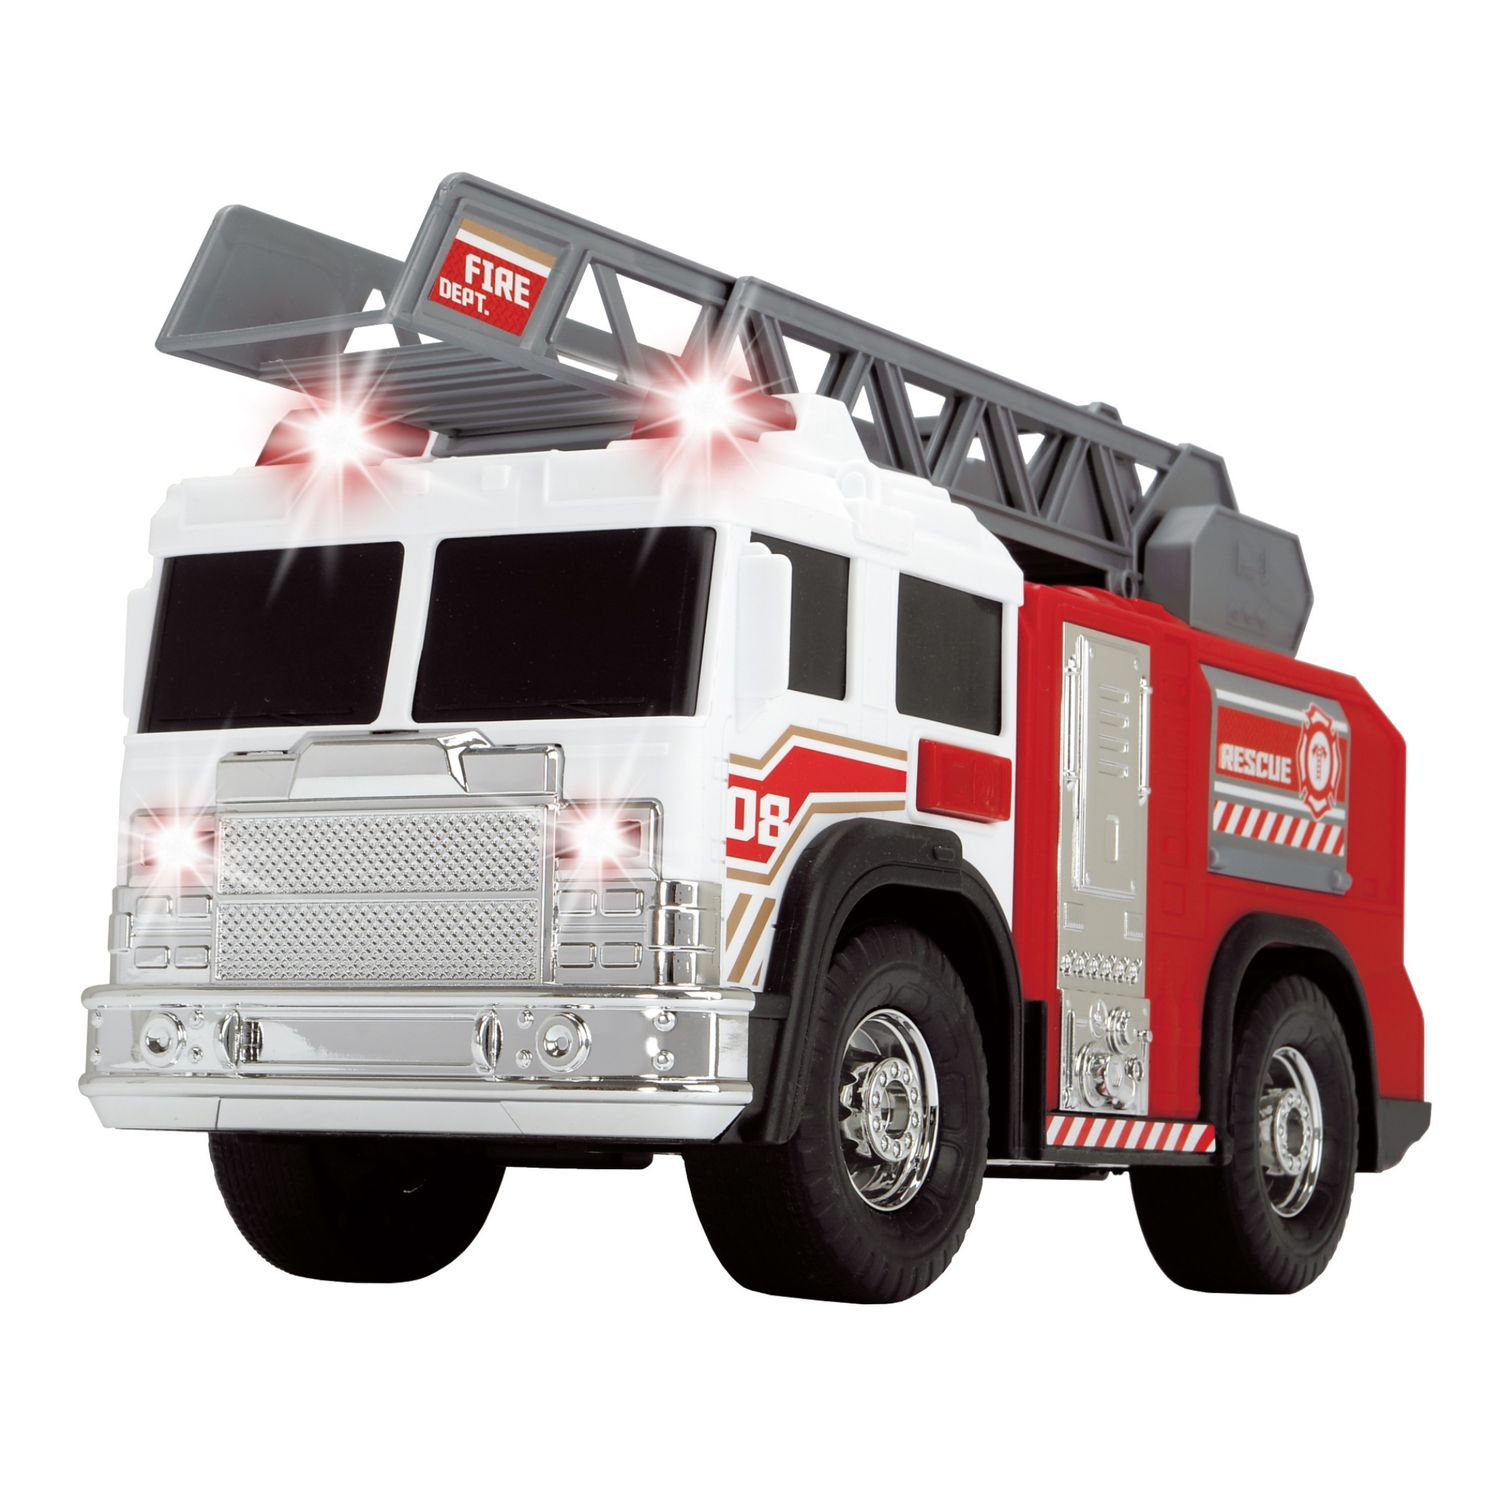 Купить игрушку пожарный. Пожарный автомобиль Dickie Toys пожарная машина (3717002). Пожарный автомобиль Dickie Toys пожарная машина (3717002) 30 см. Игрушка Dickie пожарная машина 3306005. Пожарный автомобиль Dickie Toys 3719000 50 см.